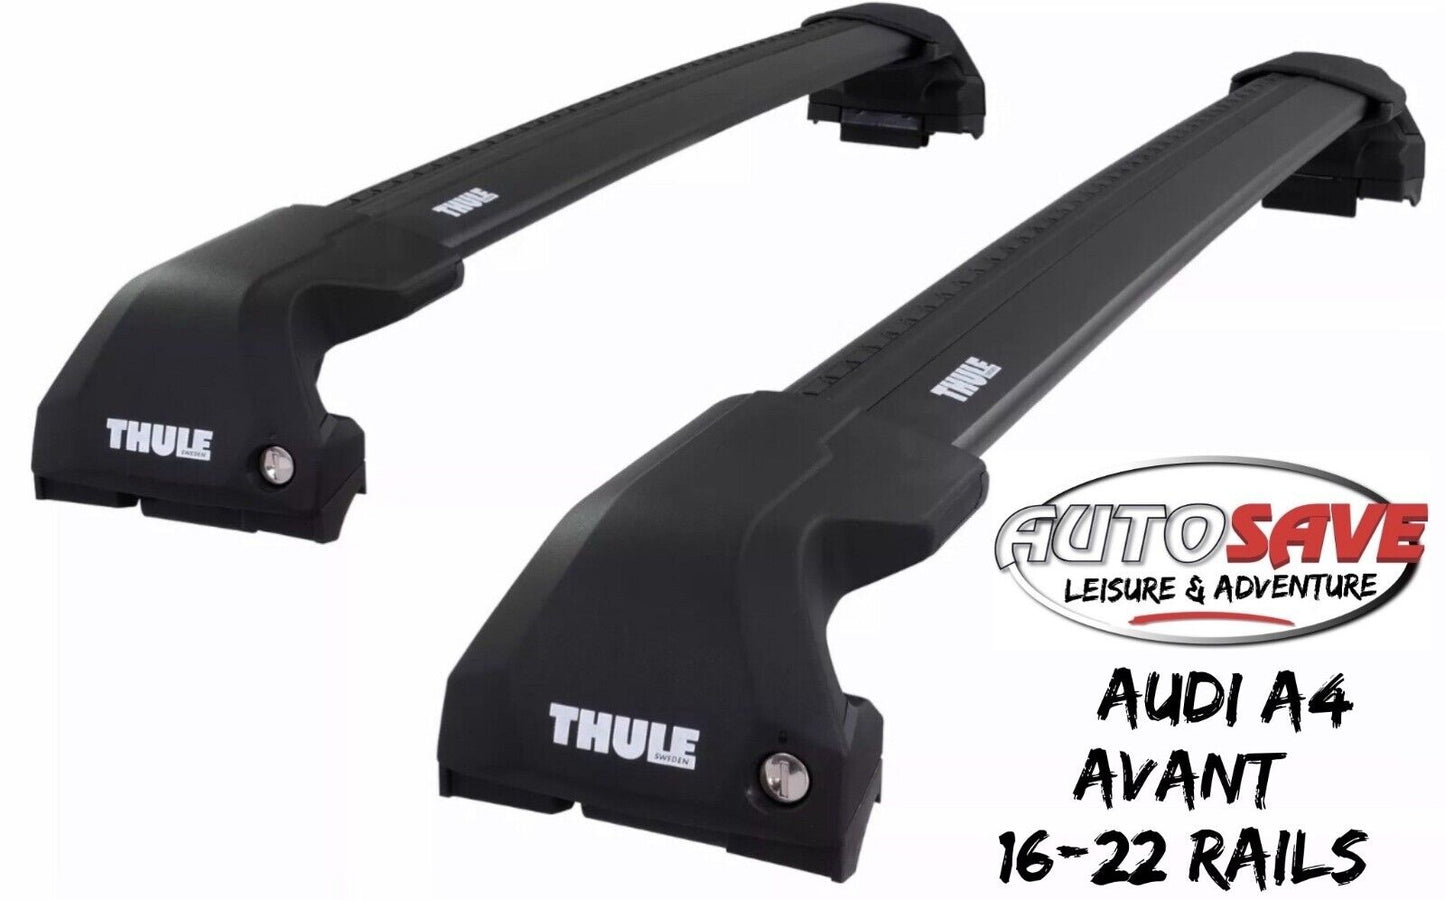 Thule WingBar Edge Black Aluminium Roof Bars Set for Audi A4 Avant 16-22 Rails